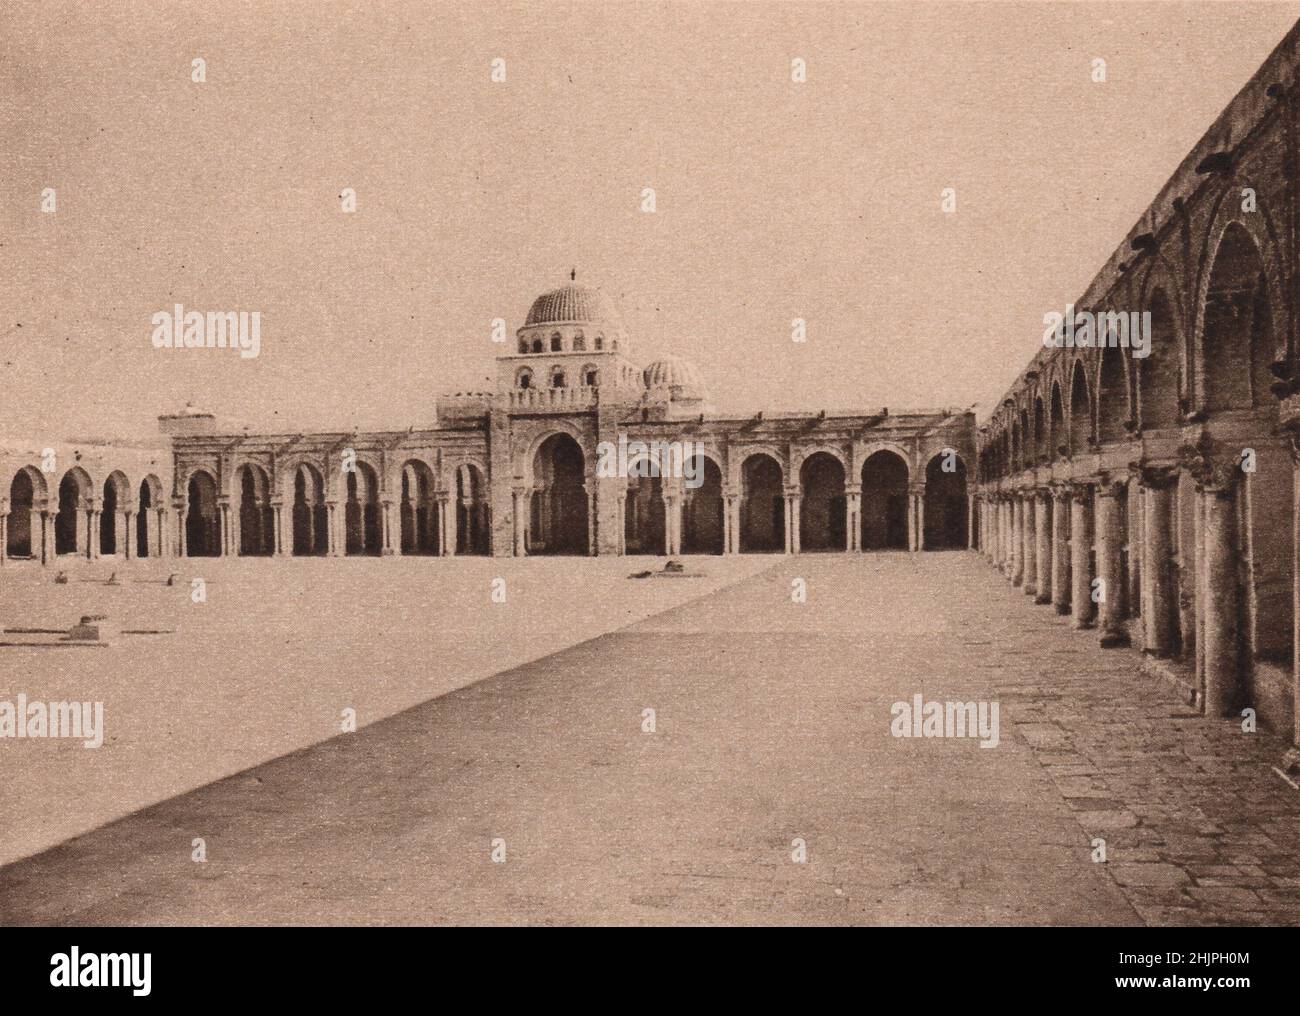 La gloria principal de Kairwan es la gran Mezquita de Okba. El maksura rectangular, abovedado, es una maravilla de pórfido y mármol. Túnez. Estados de Barbary (1923) Foto de stock